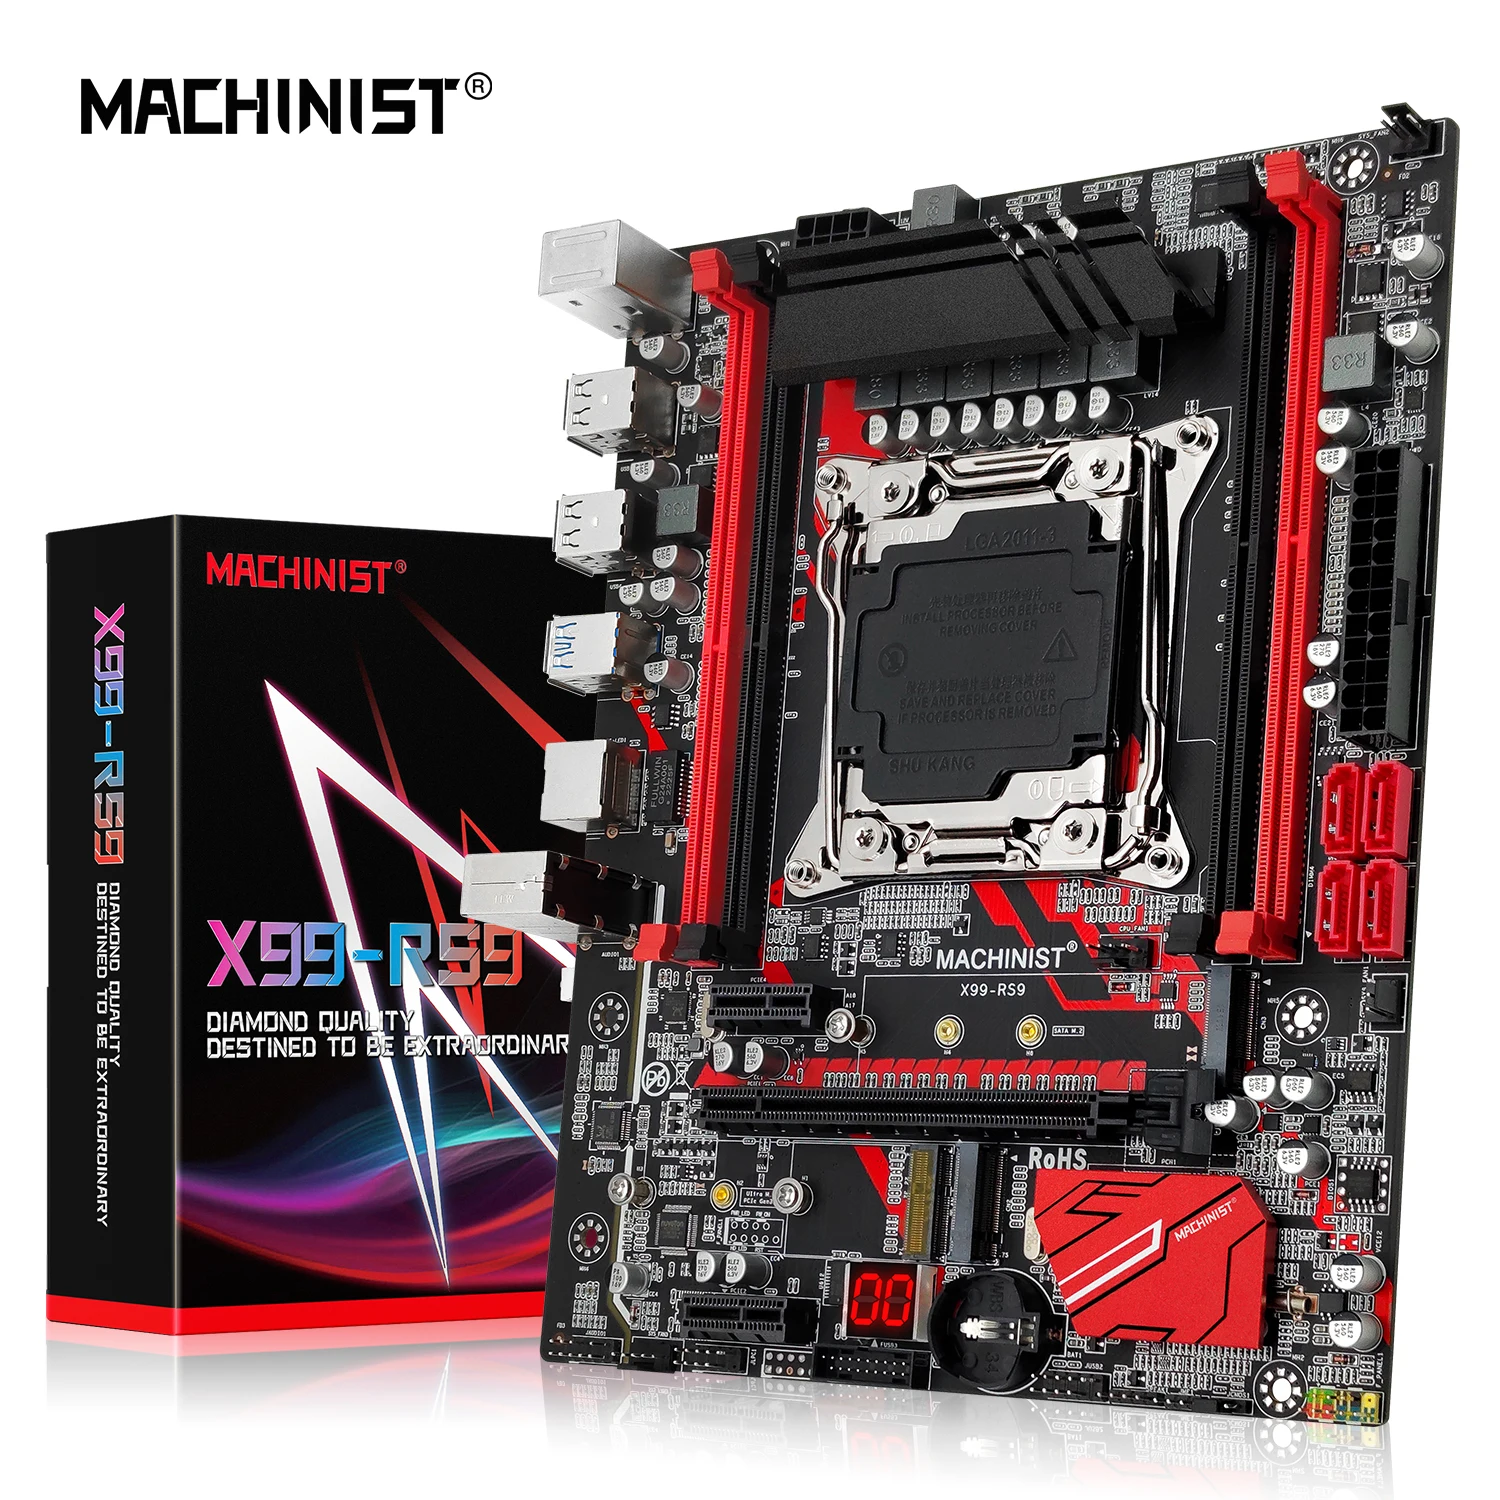 Machinist X99เมนบอร์ด LGA 2011-3 SATA/ PCI-E M.2สล็อตสนับสนุน Xeon E5 V3 V4โปรเซสเซอร์สี่ช่อง DDR4 RAM X99-RS9